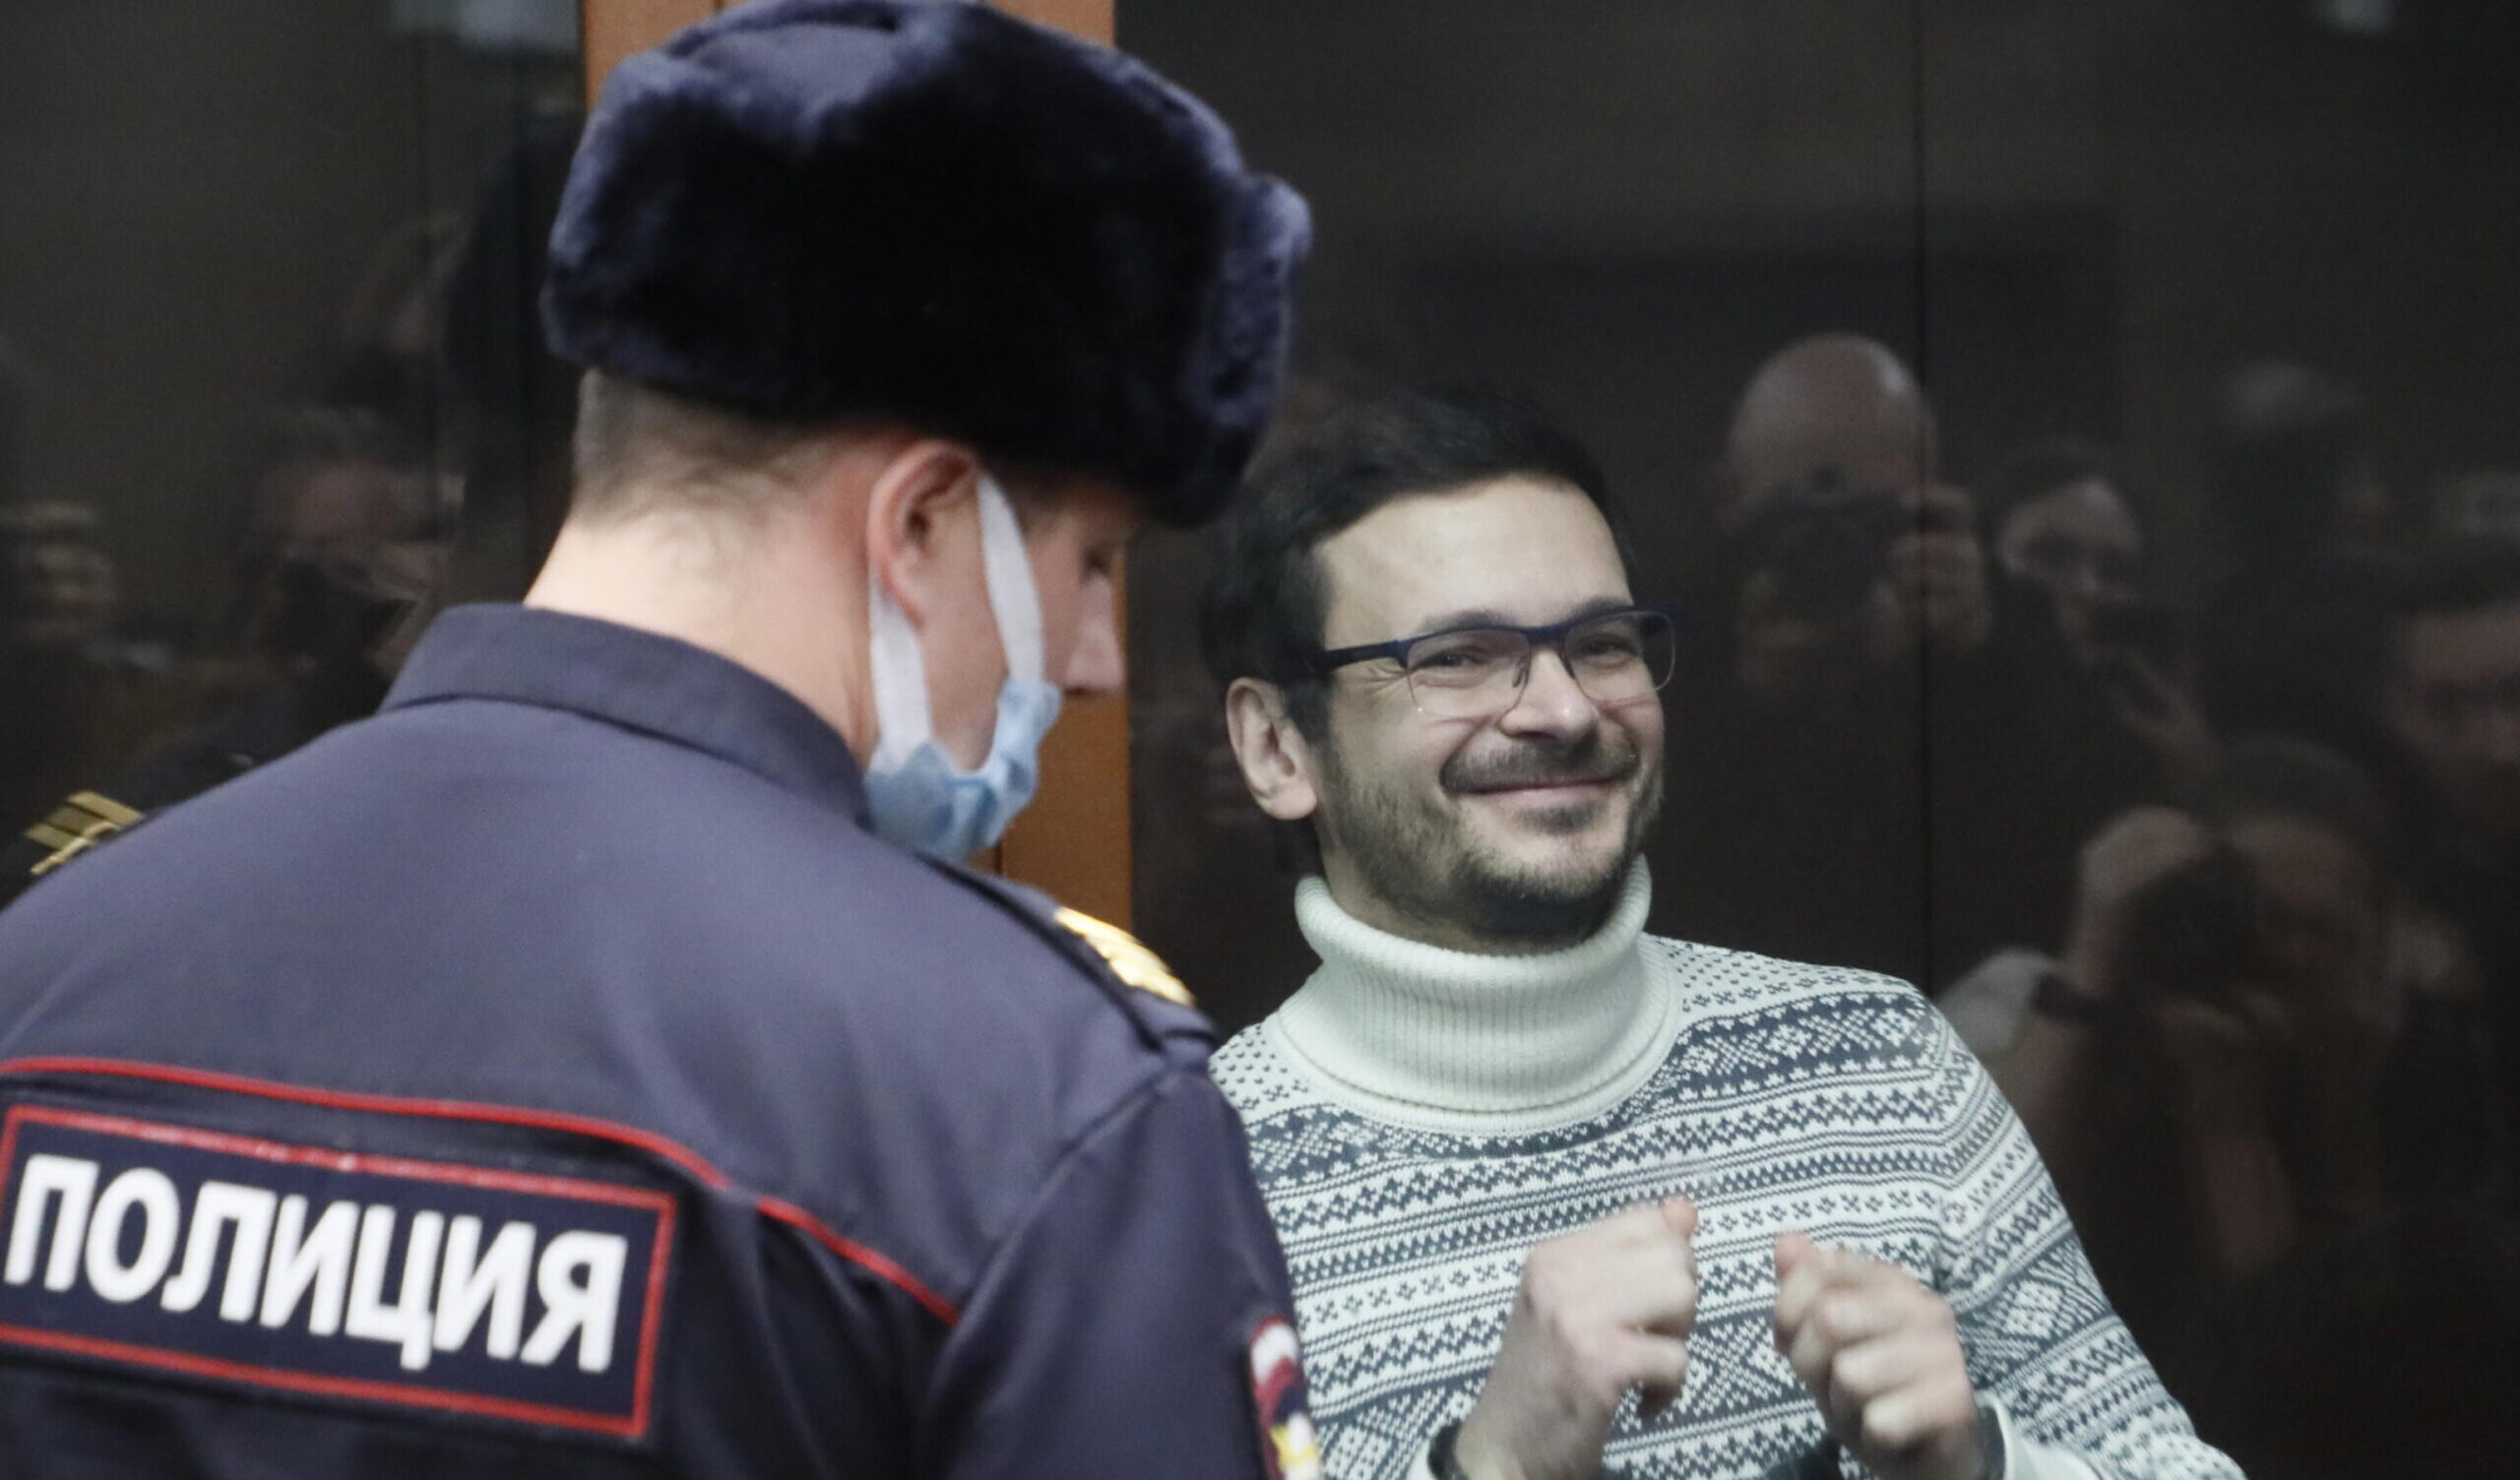 L'oppositore russo Ilya Yashin messo in cella d'isolamento: volevano impedire l'incontro con i genitori